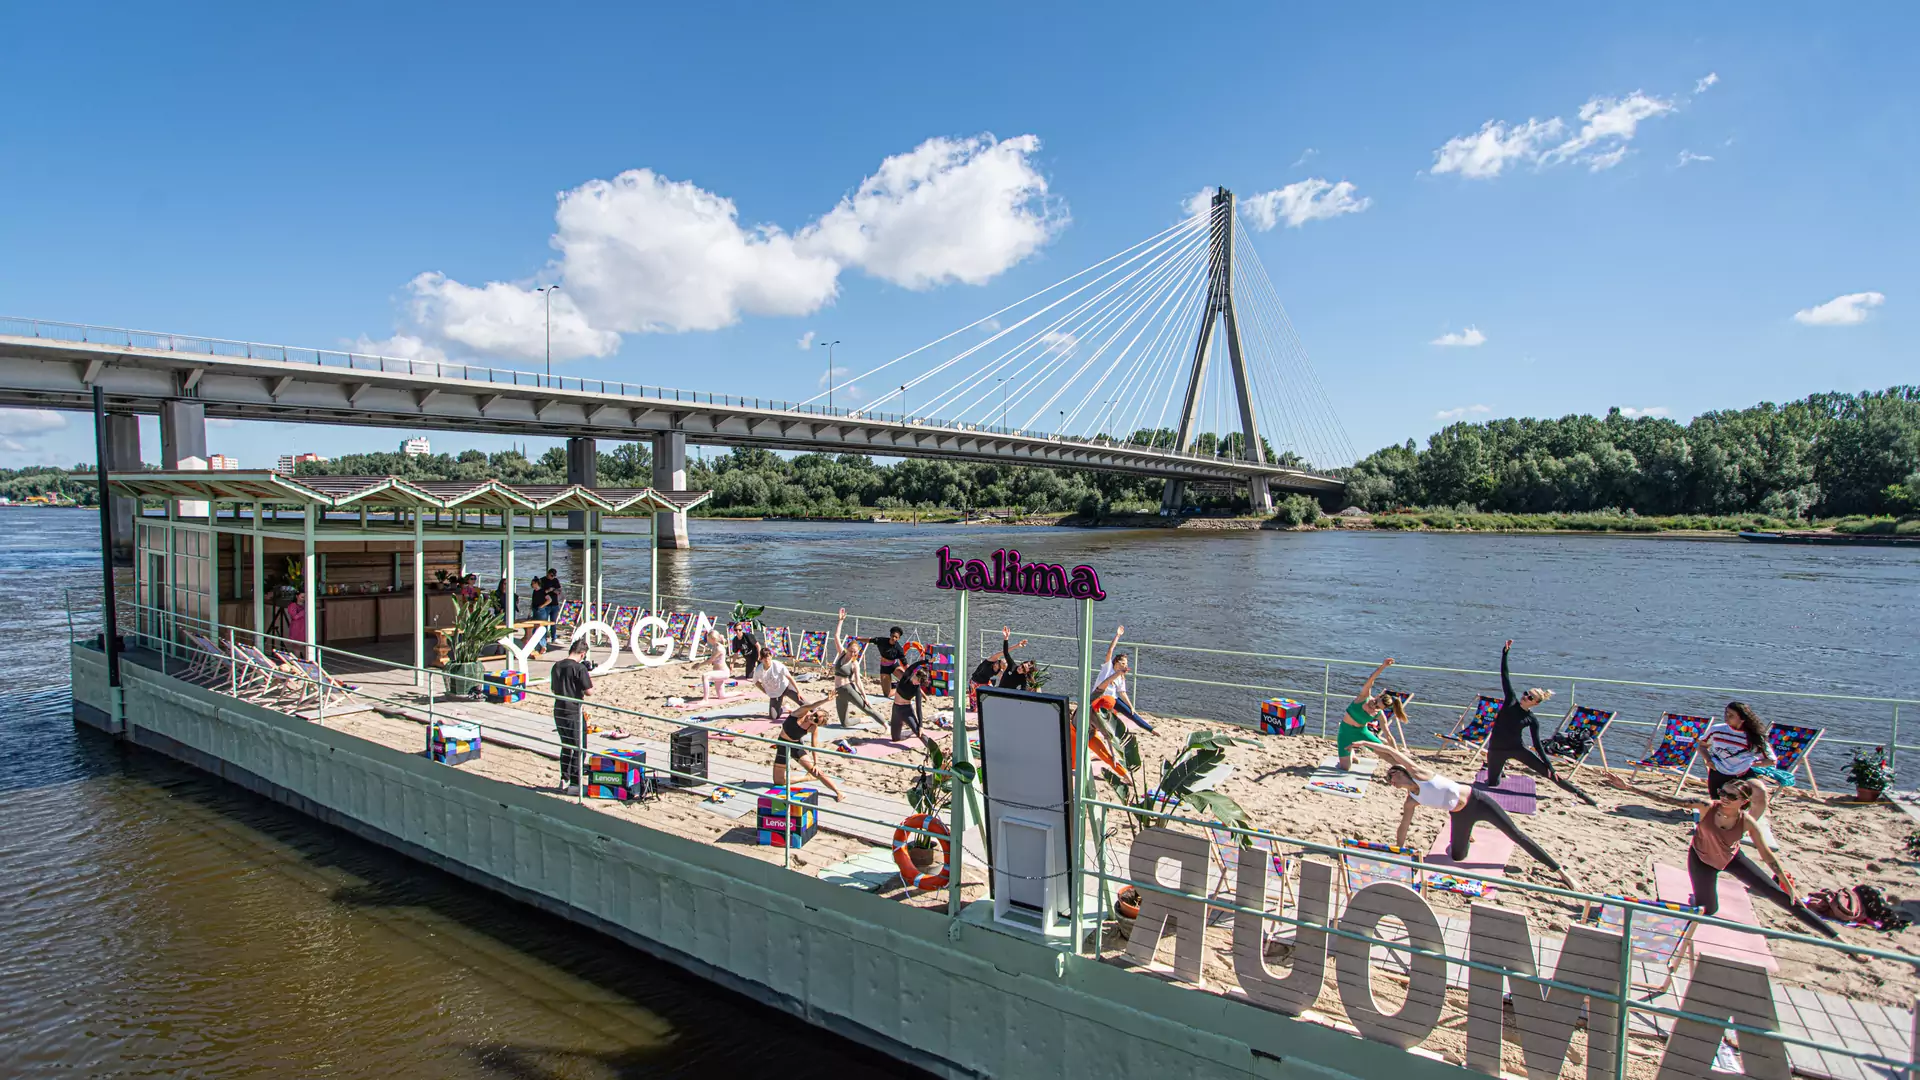 Warszawa otwiera swoją własną pływającą plażę. To jedyna taka atrakcja w Polsce